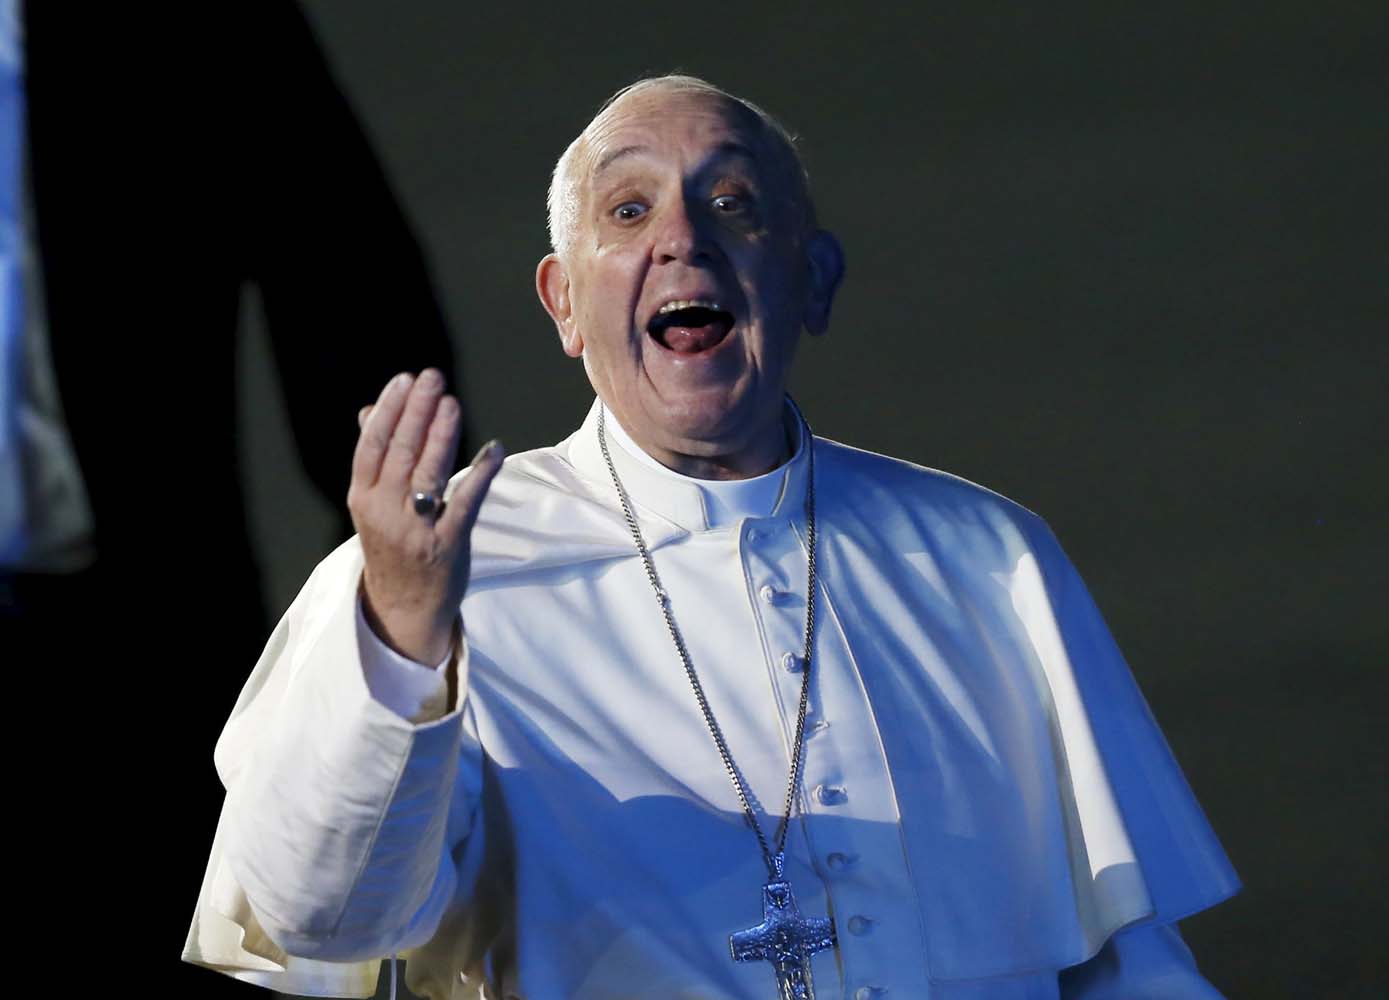 El Papa se equivoca y le habla en italiano a los mexicanos (video)